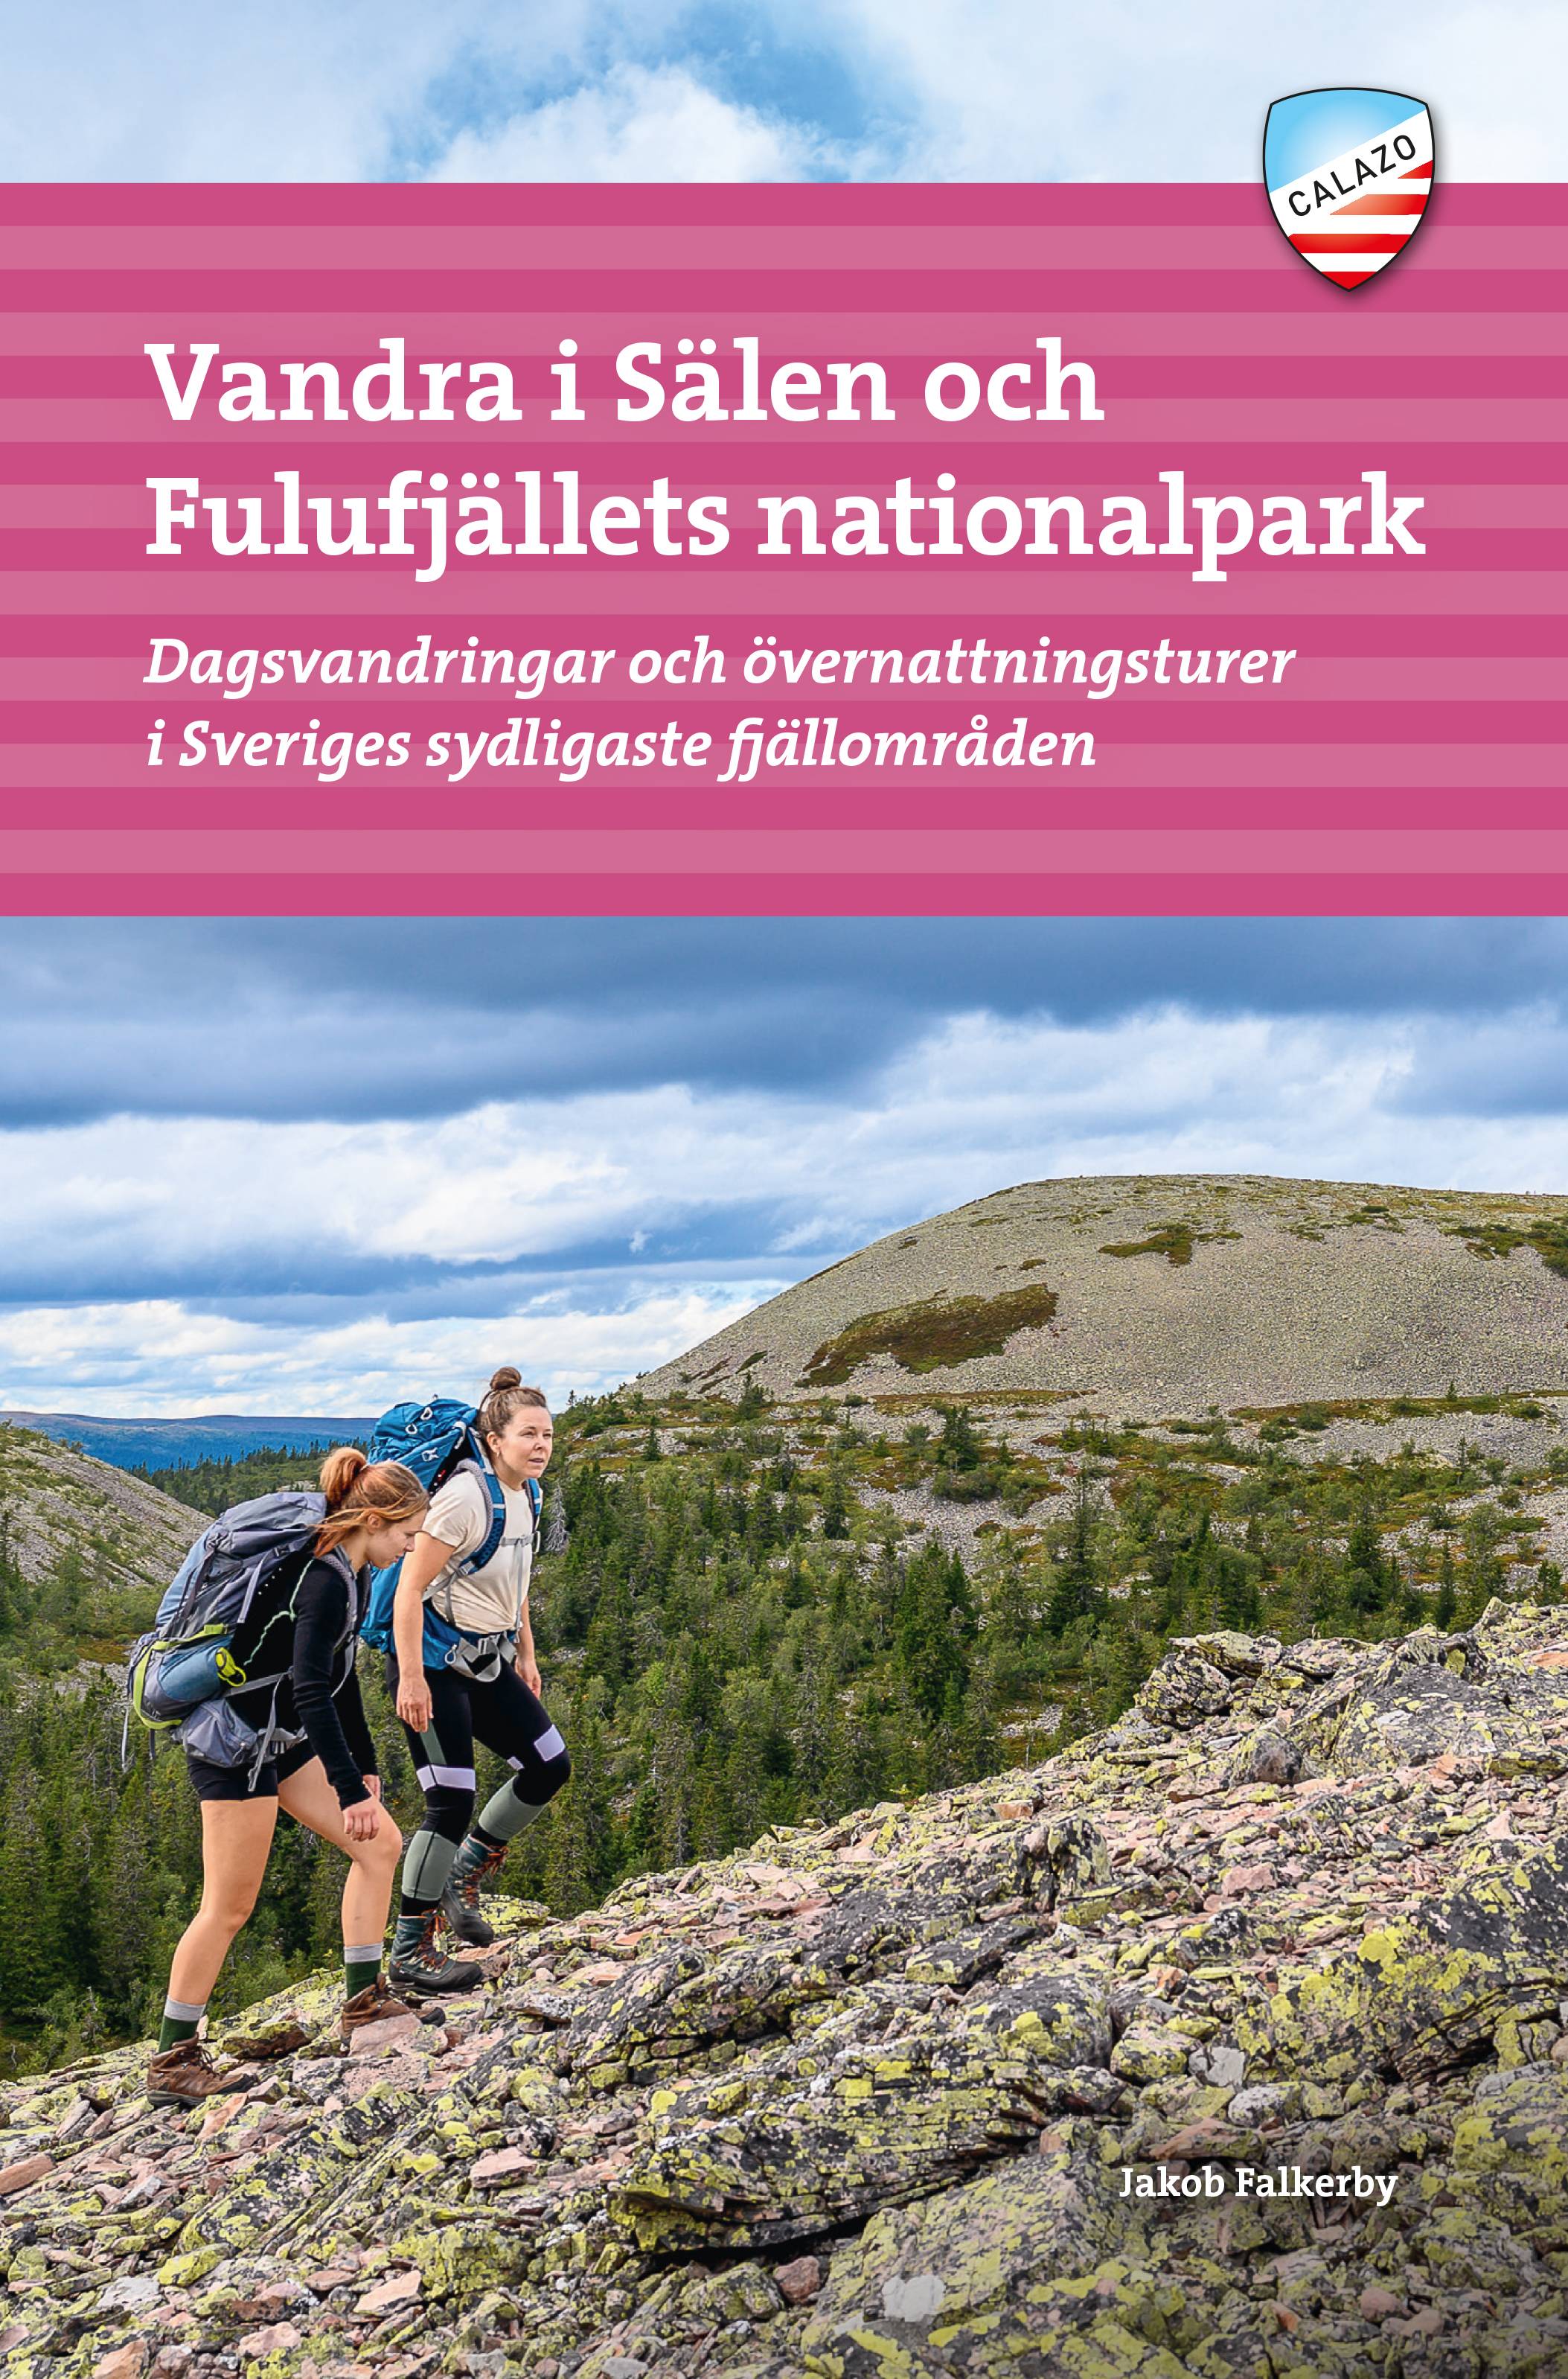 Vandra i Sälen och Fulufjällens nationalpark